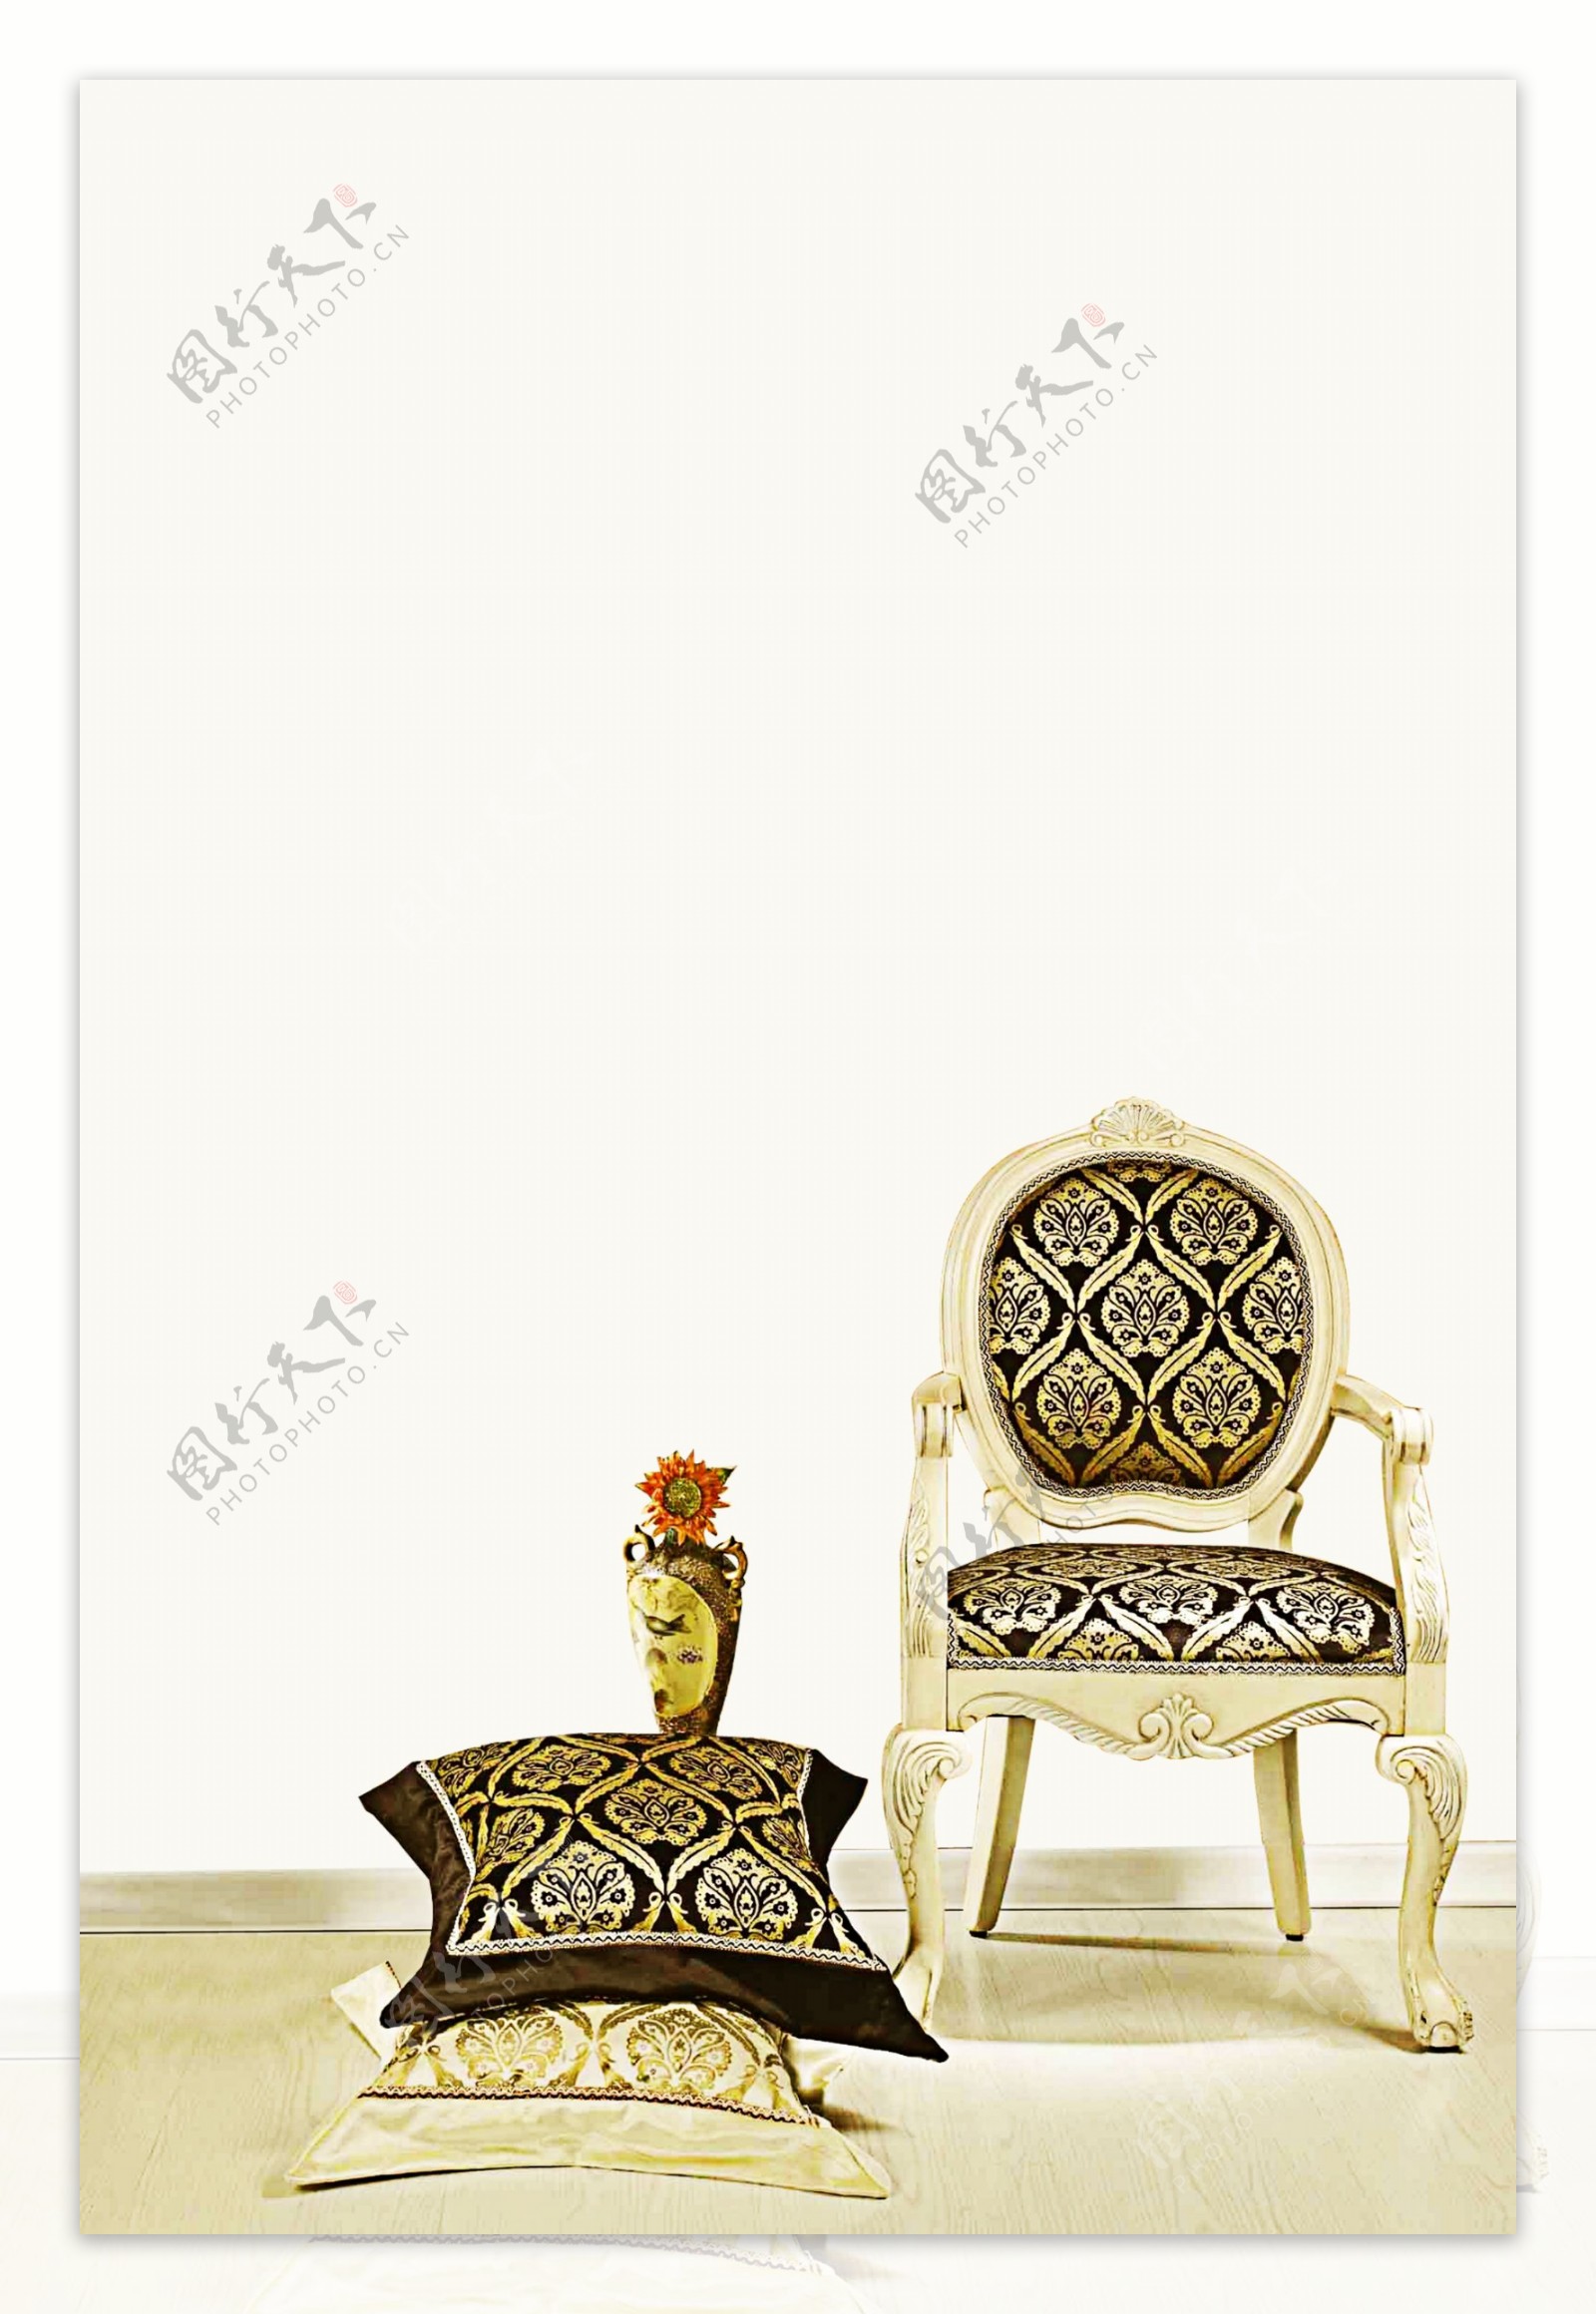 家居家具椅子图片